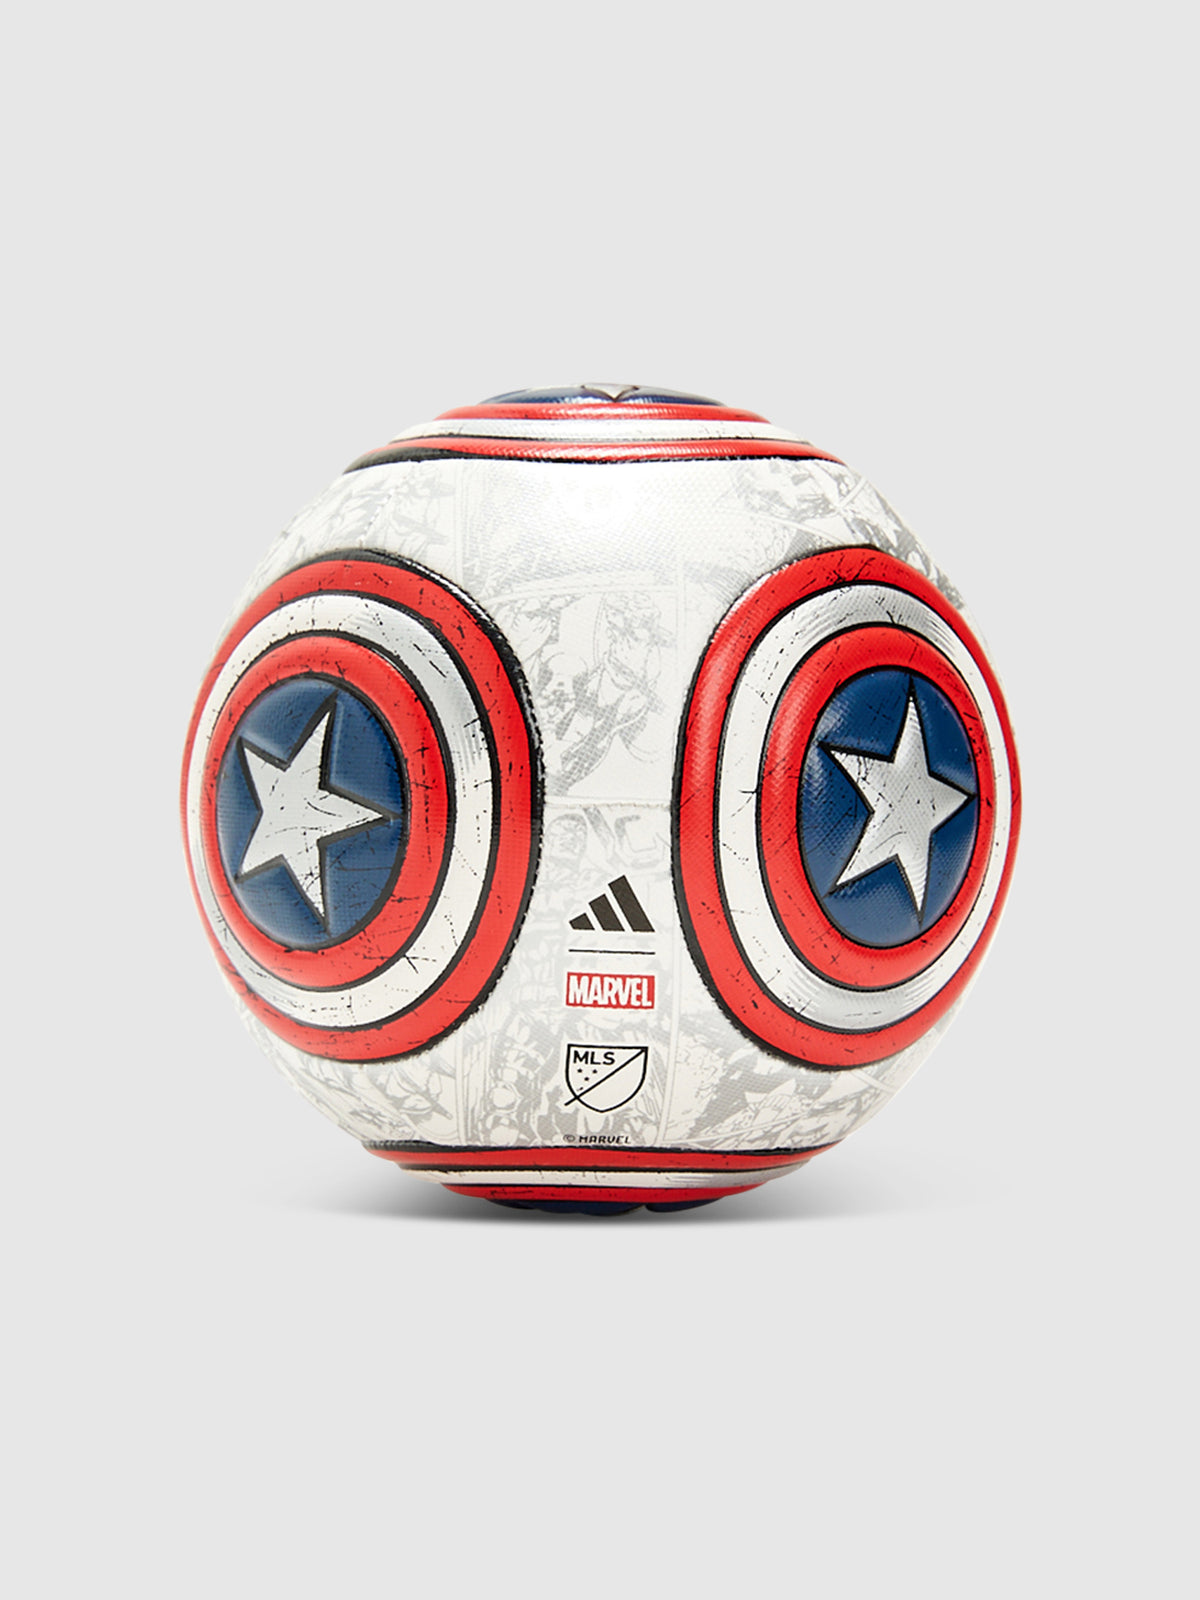 כדור כדורגל מיני קפטן אמריקה